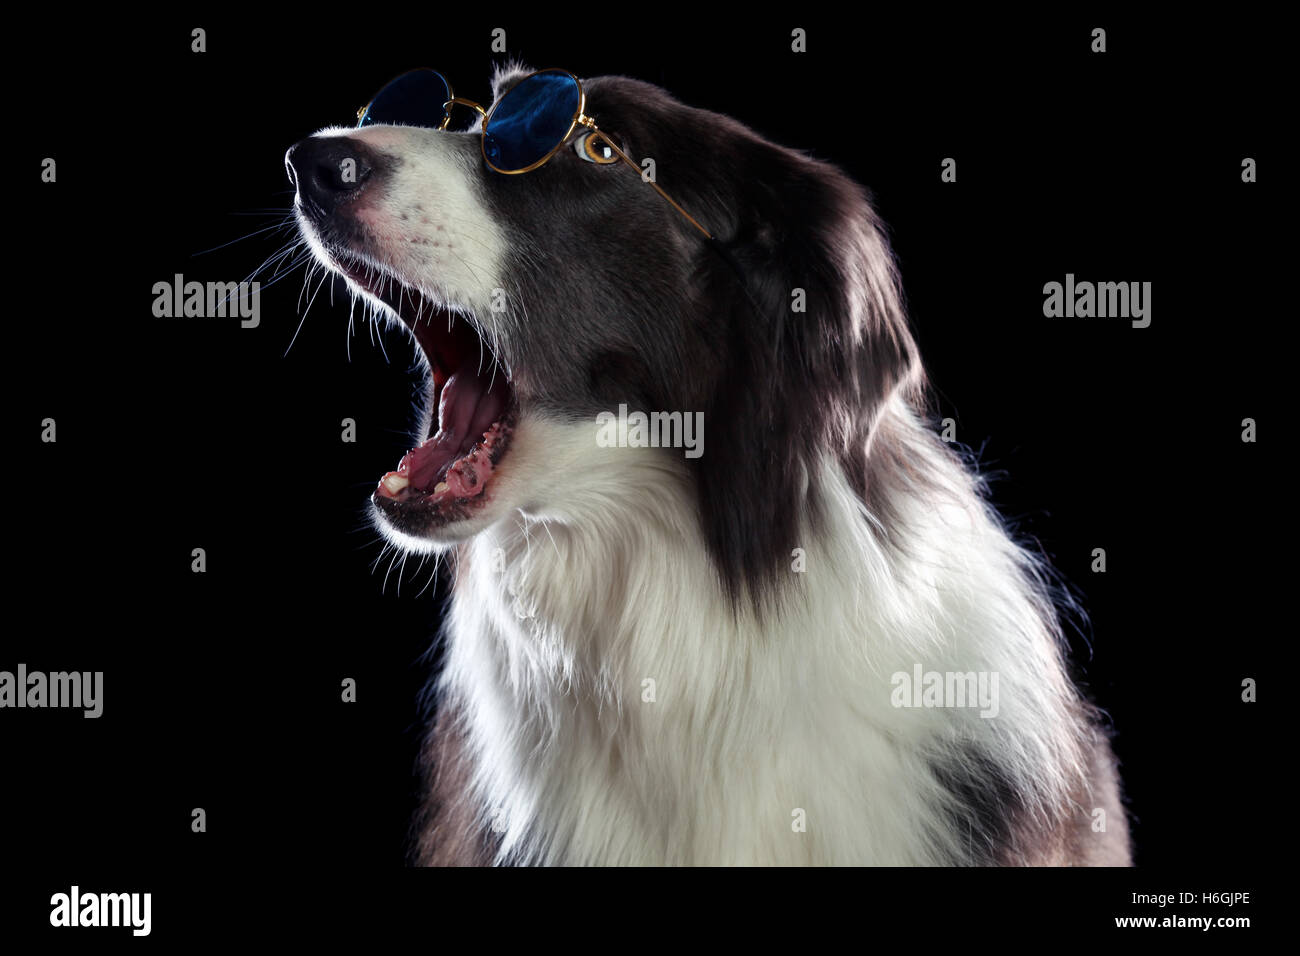 Beautiful border collie dog yawning Stock Photo